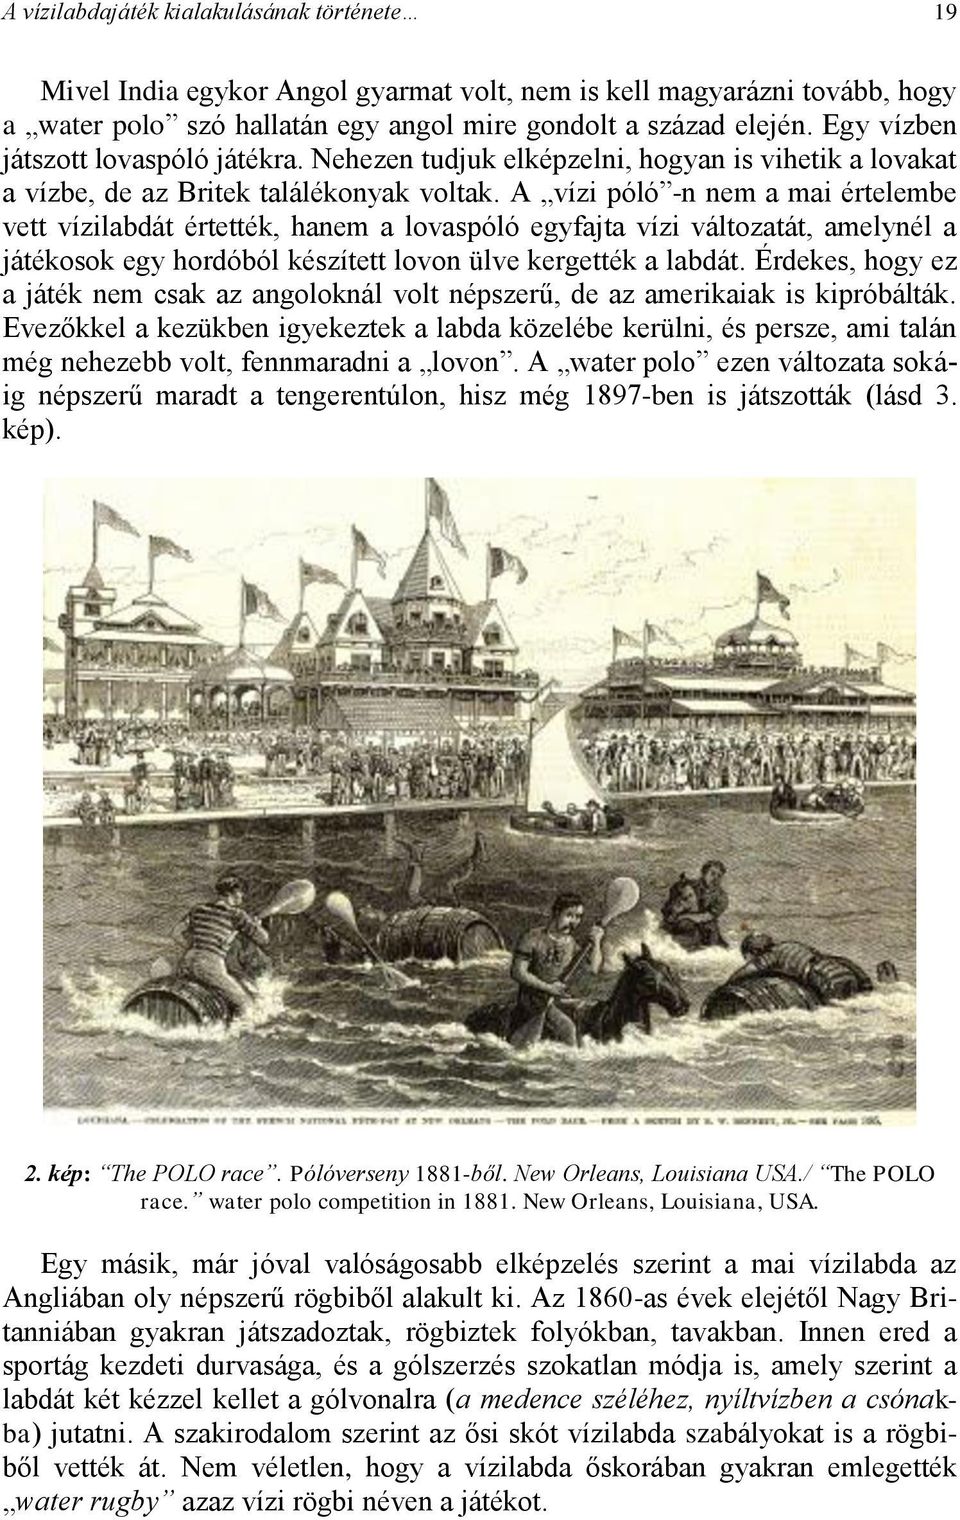 A vízi póló -n nem a mai értelembe vett vízilabdát értették, hanem a lovaspóló egyfajta vízi változatát, amelynél a játékosok egy hordóból készített lovon ülve kergették a labdát.